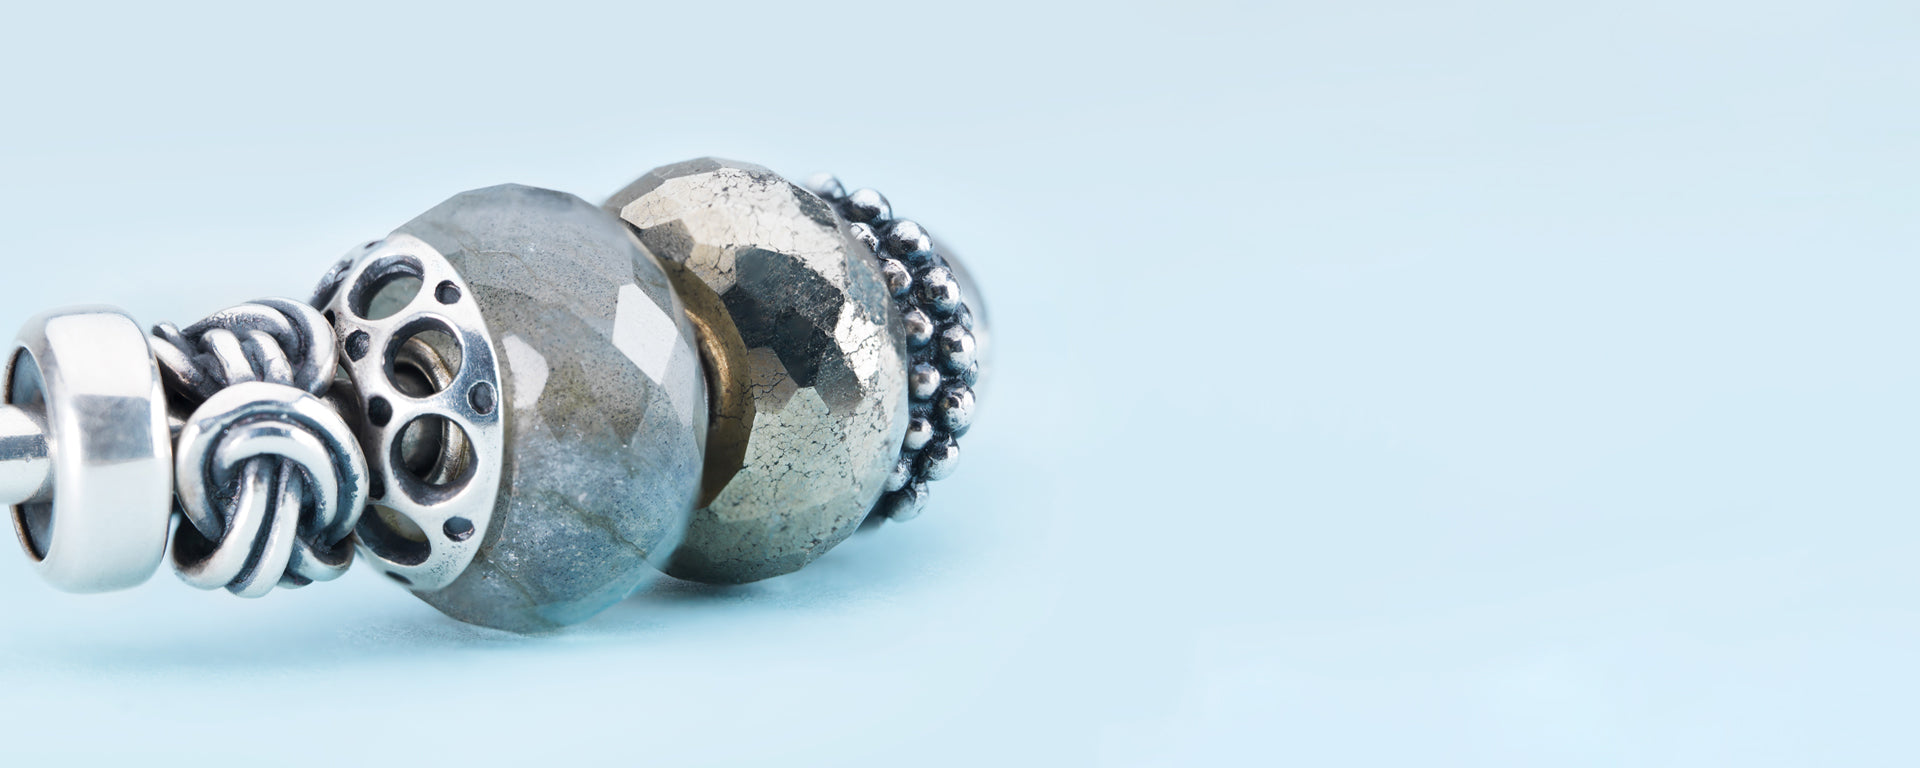 Armspange aus Sterlingsilber mit 3 silbernen Beads, einer Labradorit- und einem Pyrith-Bead und silbernen Spacern